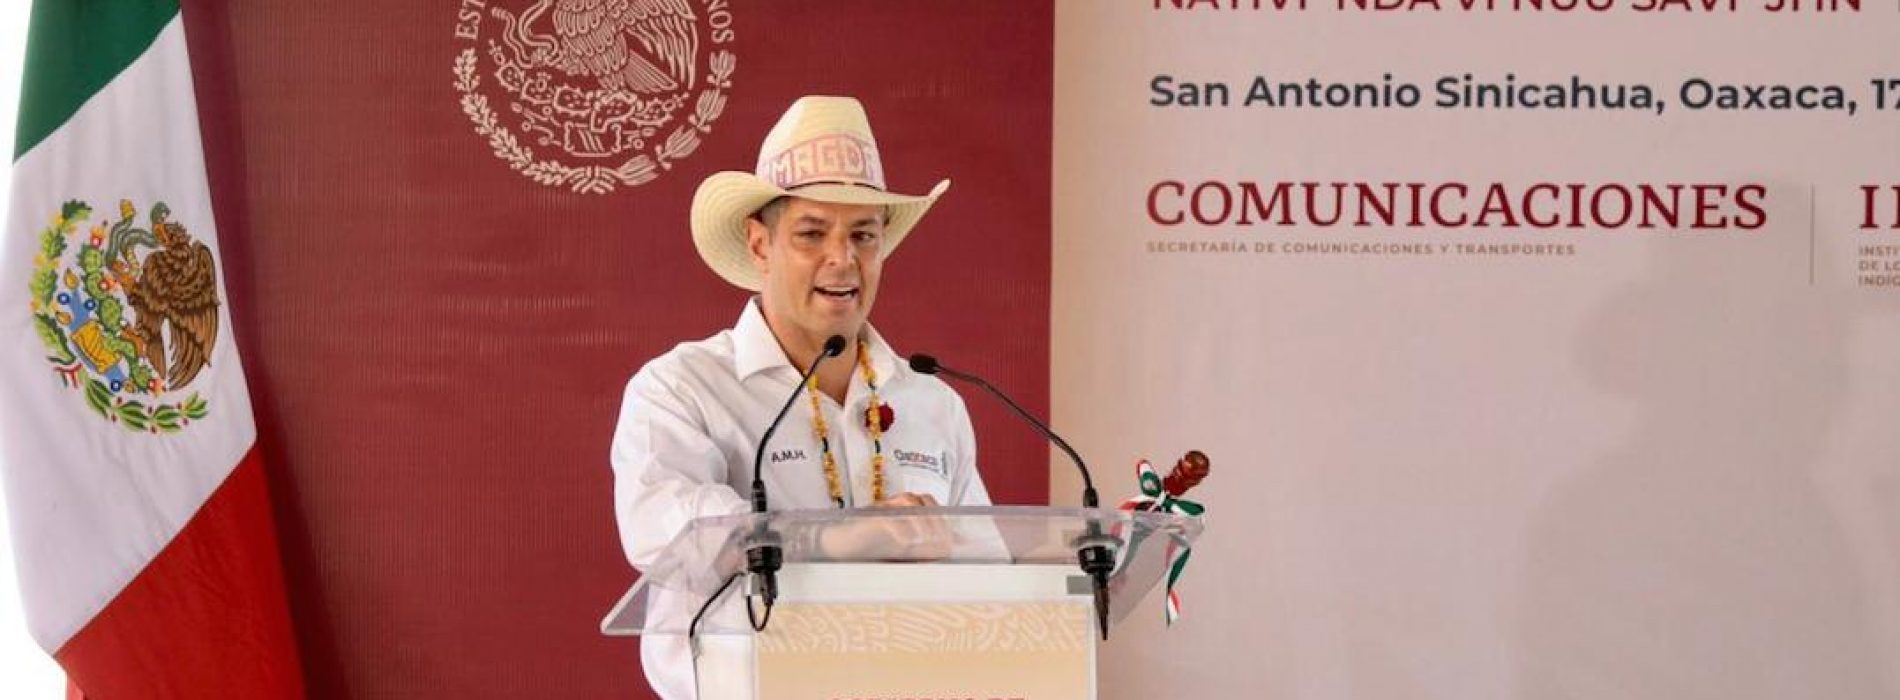 Llegan suministros de medicina a Oaxaca, confirma el gobernador Murat